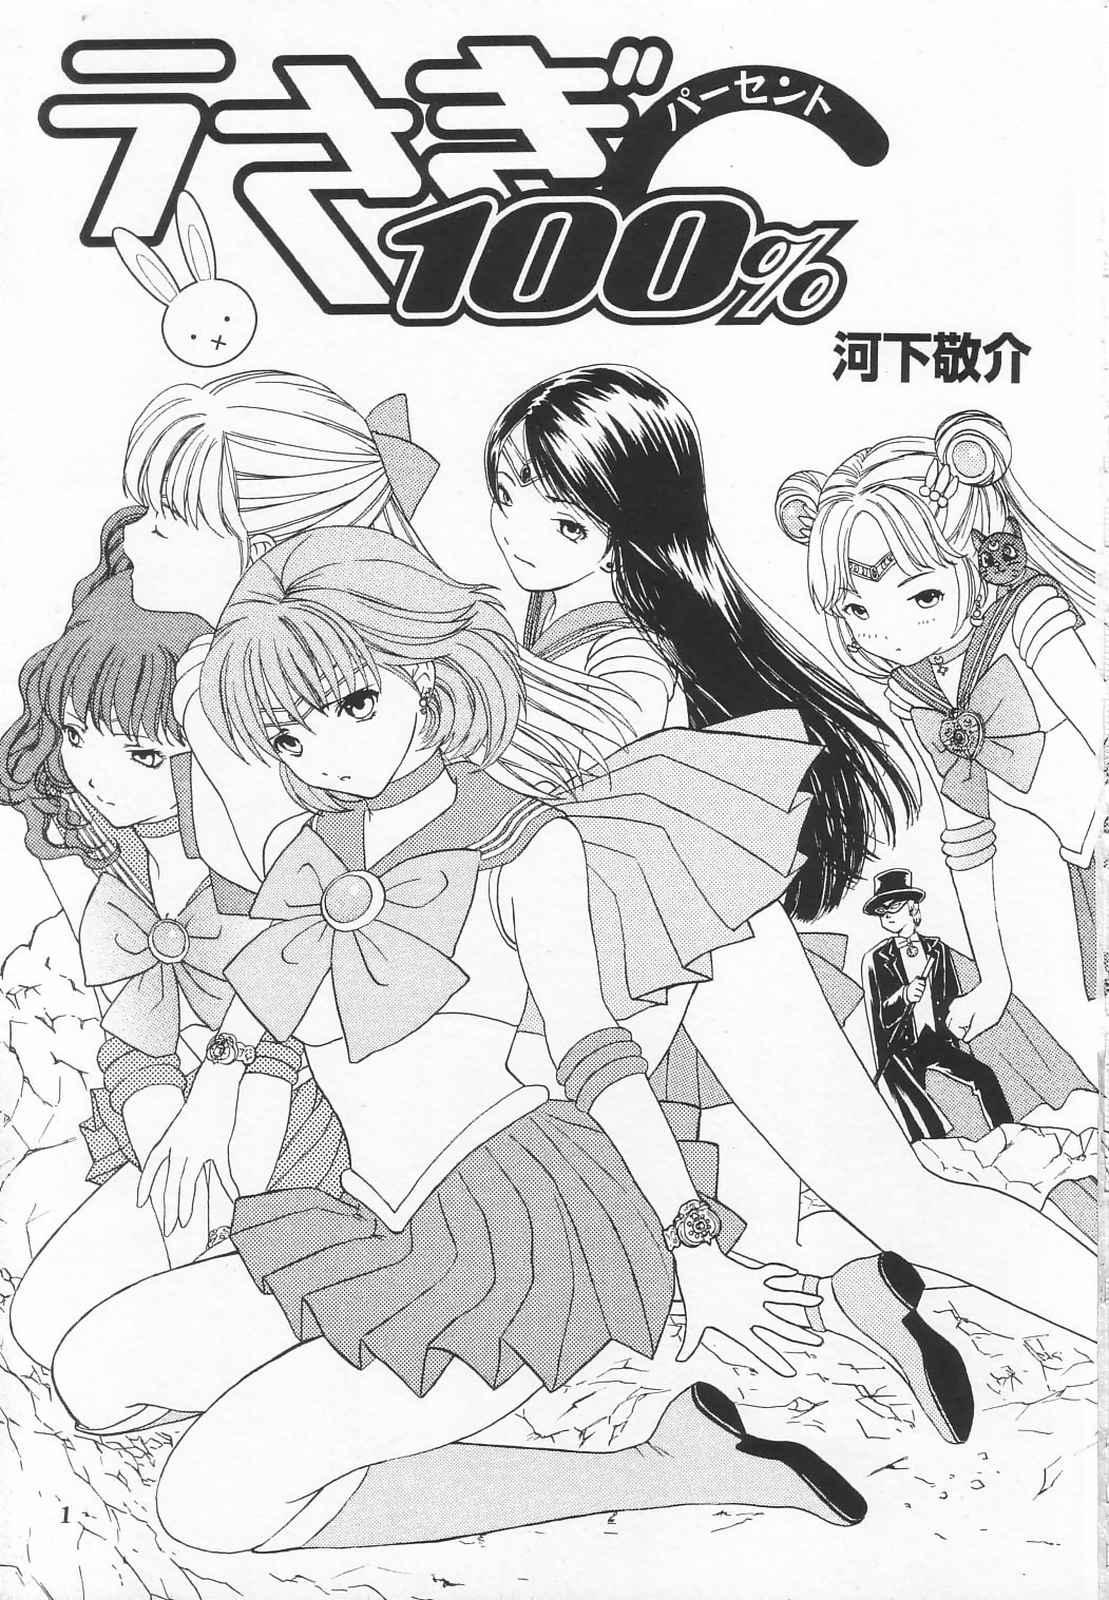 Chilena Tokusatsu Magazine x 2003 Fuyu Gou - Sailor moon Ichigo 100 Gay Brownhair - Picture 3